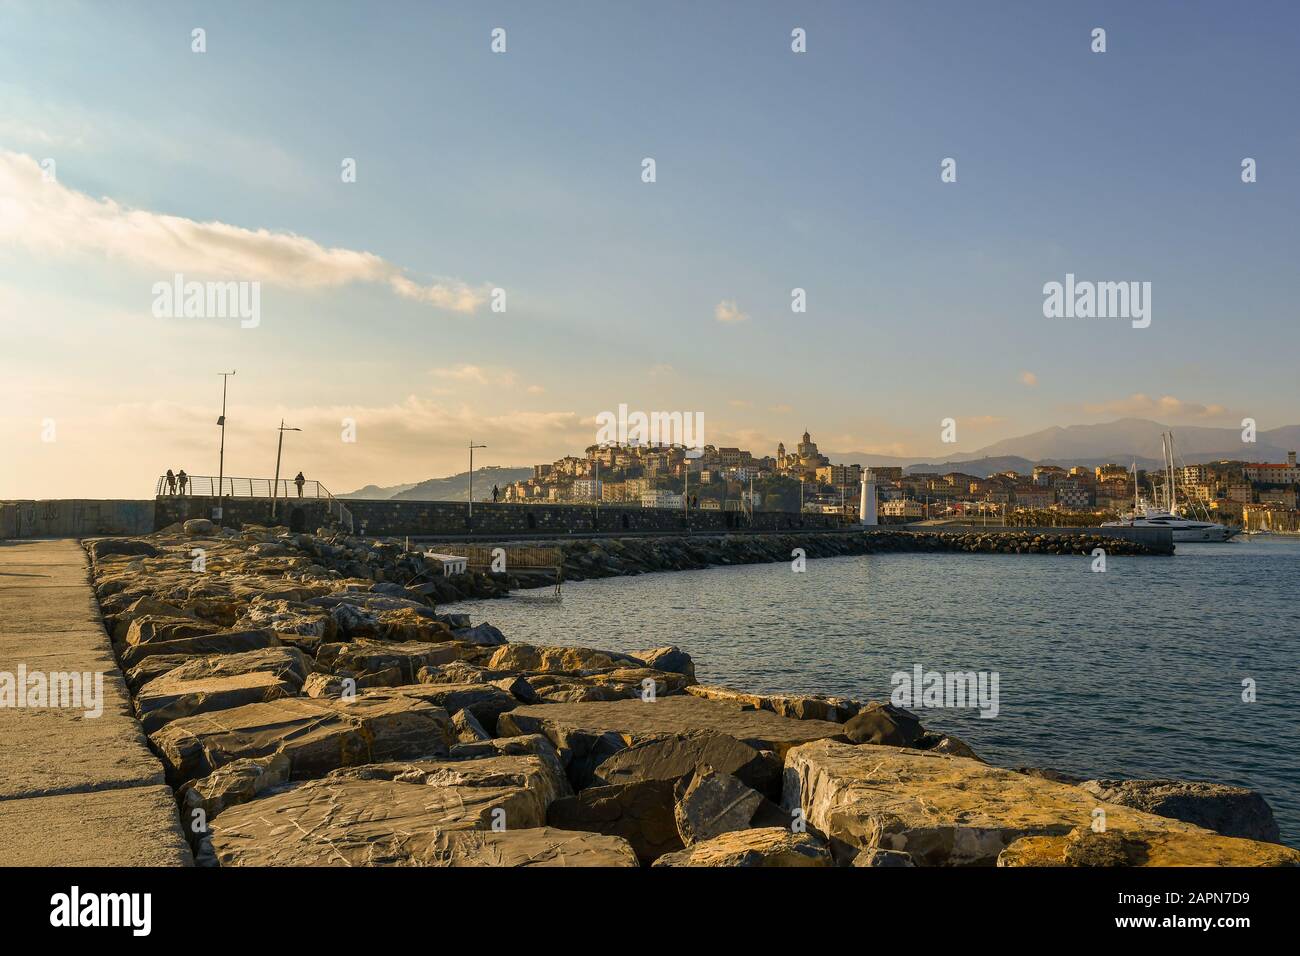 Vue panoramique depuis un brise-lames rocheux de la ville côtière de Porto Maurizio avec le port, le phare et les gens marchant, Imperia, Ligurie, Italie Banque D'Images